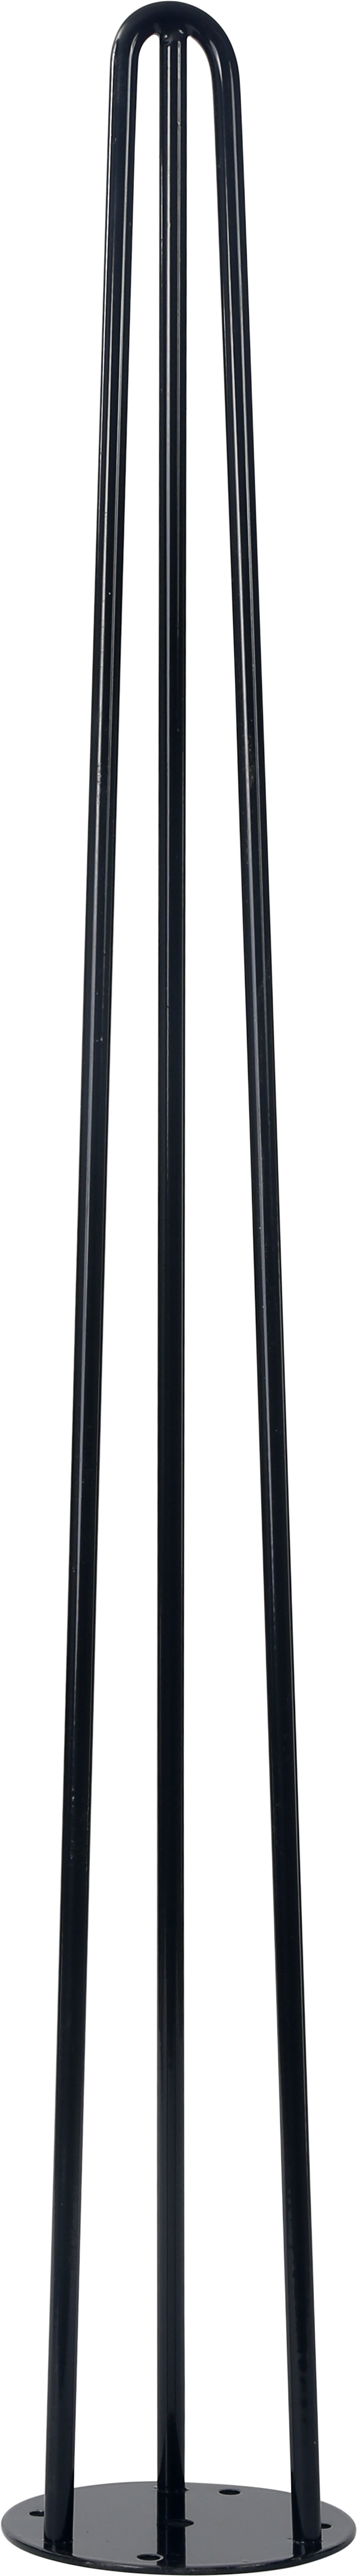 Pata fija de acero para mesas y encimeras 8 x 71 cm color negro